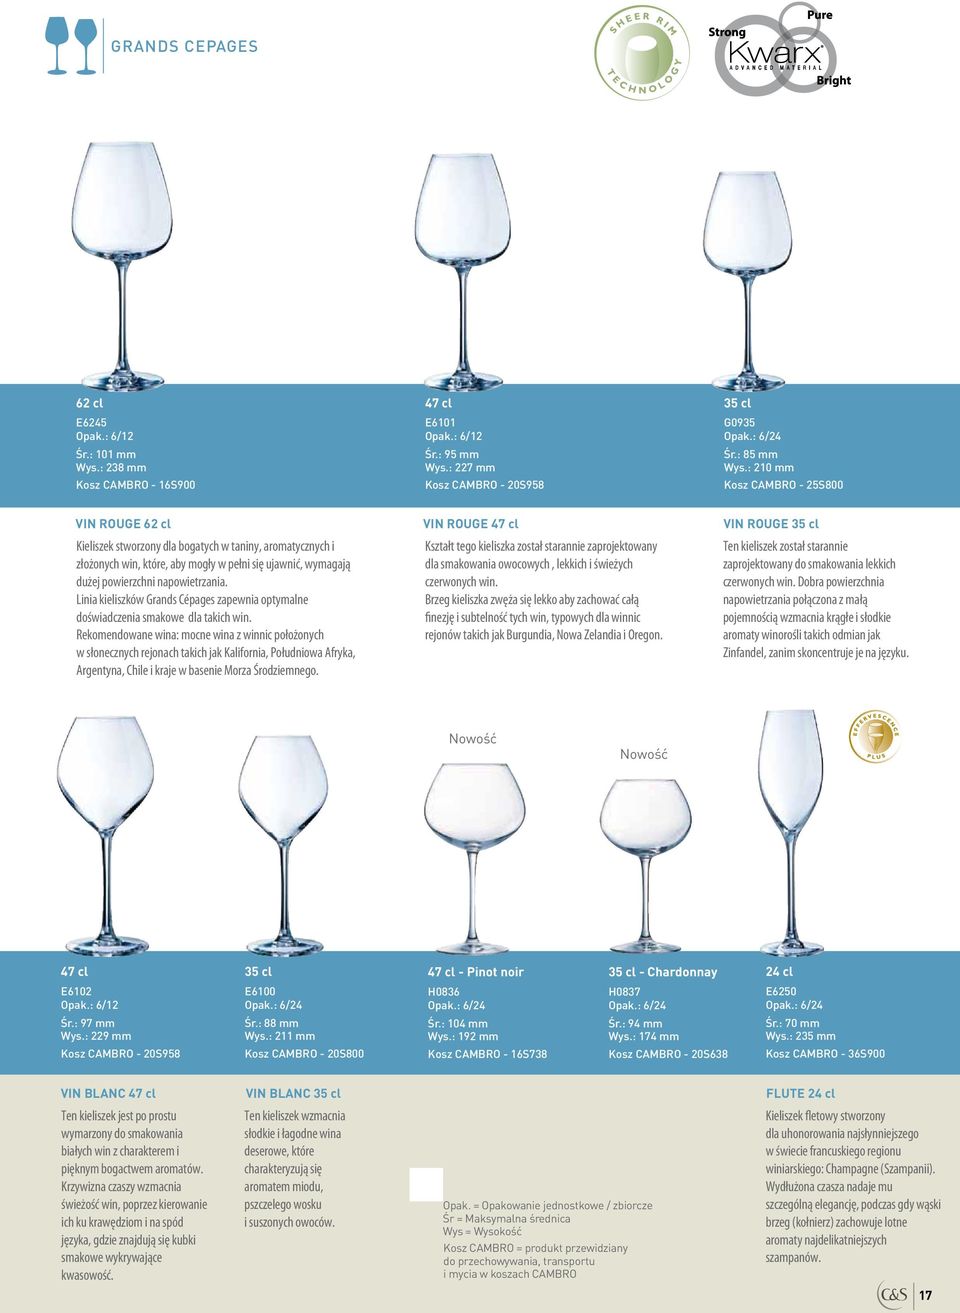 Linia kieliszków Grands Cépages zapewnia optymalne doświadczenia smakowe dla takich win.